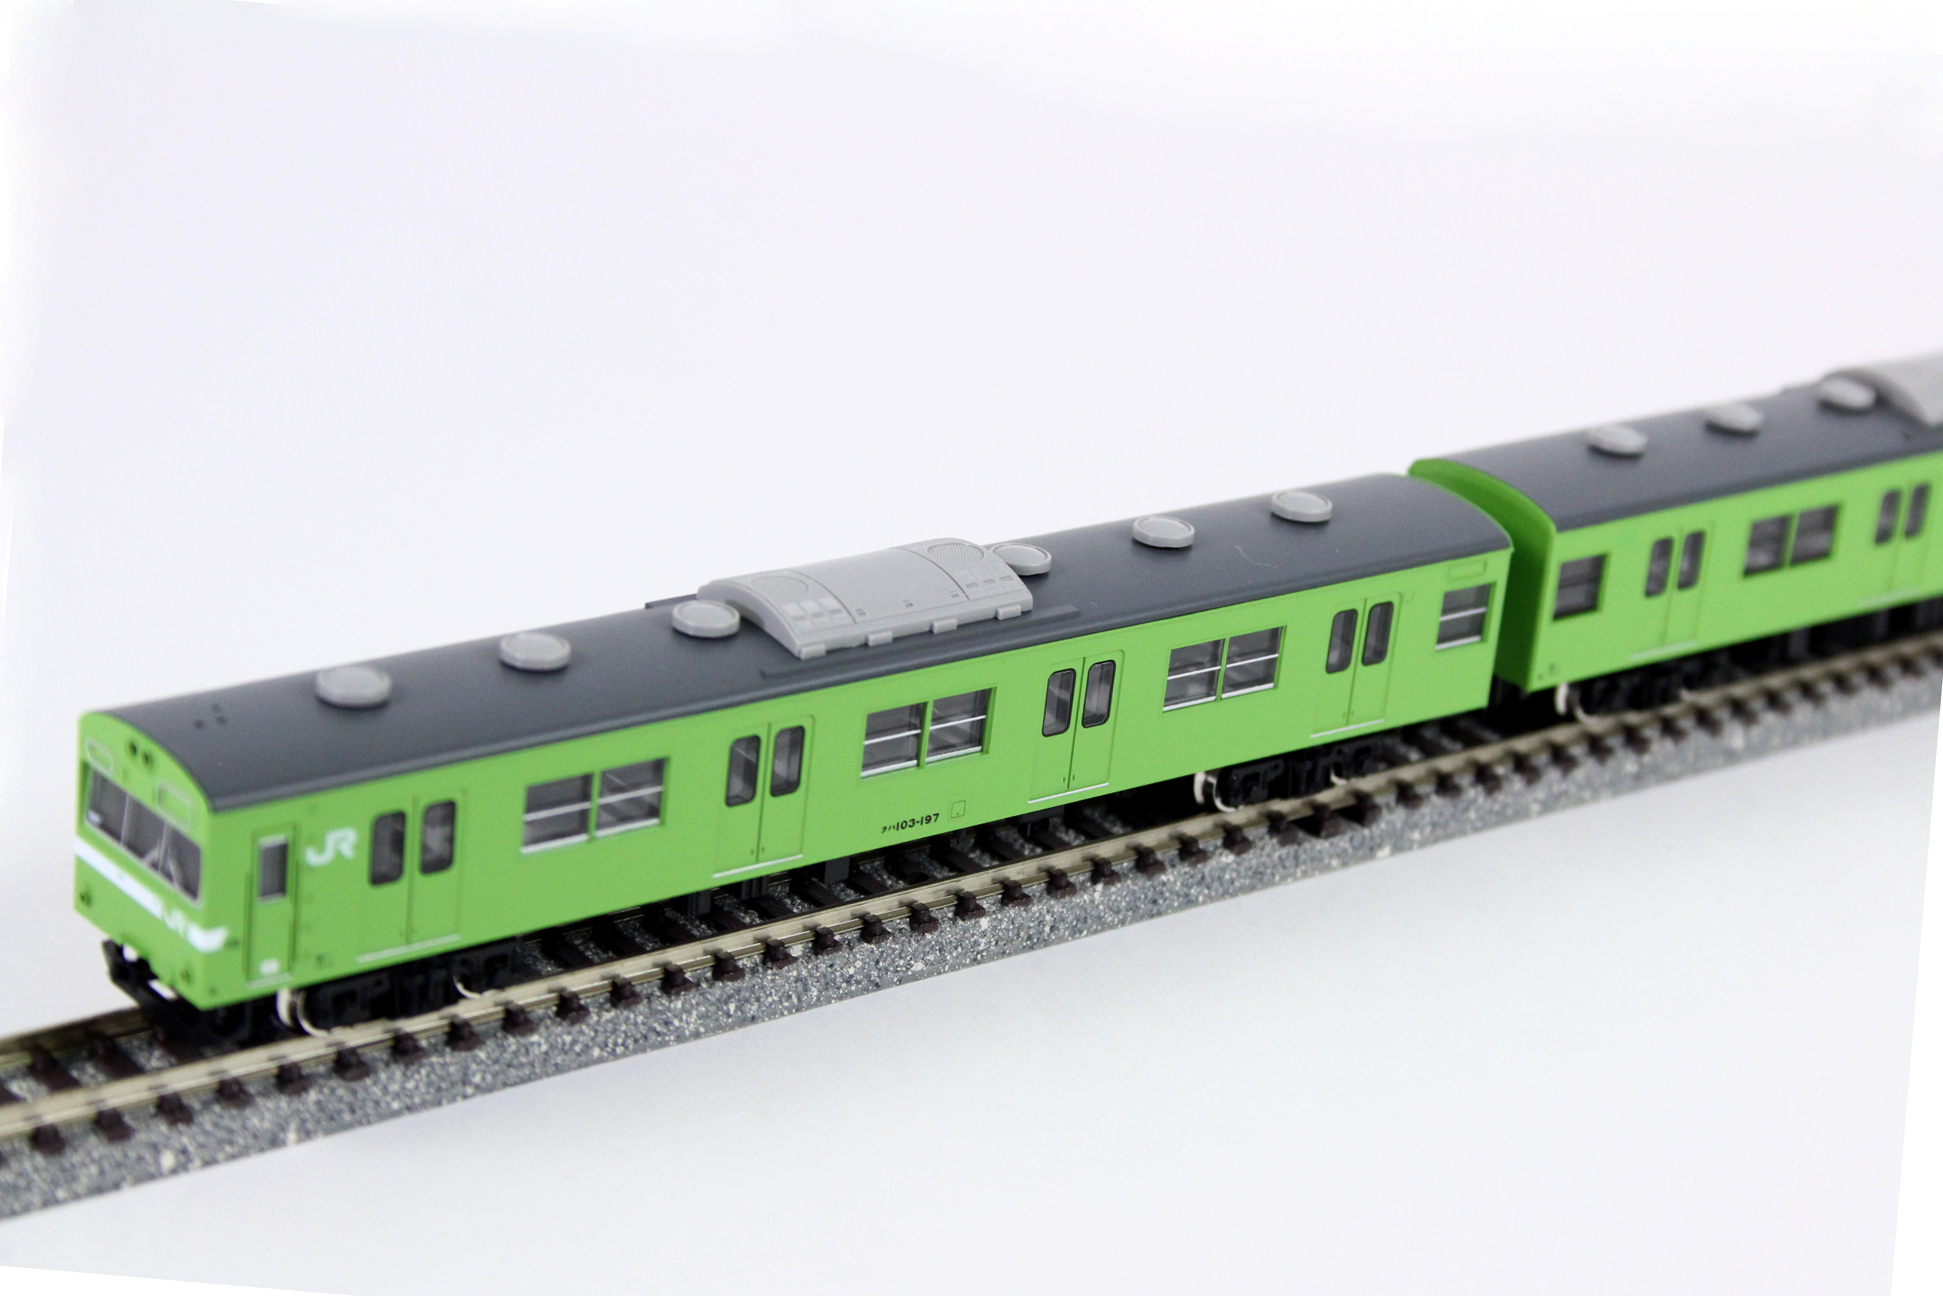 50611 JR103系(関西形・ウグイス・NS617編成) 6両編成セット(動力付き) Nゲージ 鉄道模型 GREENMAX(グリーンマックス)